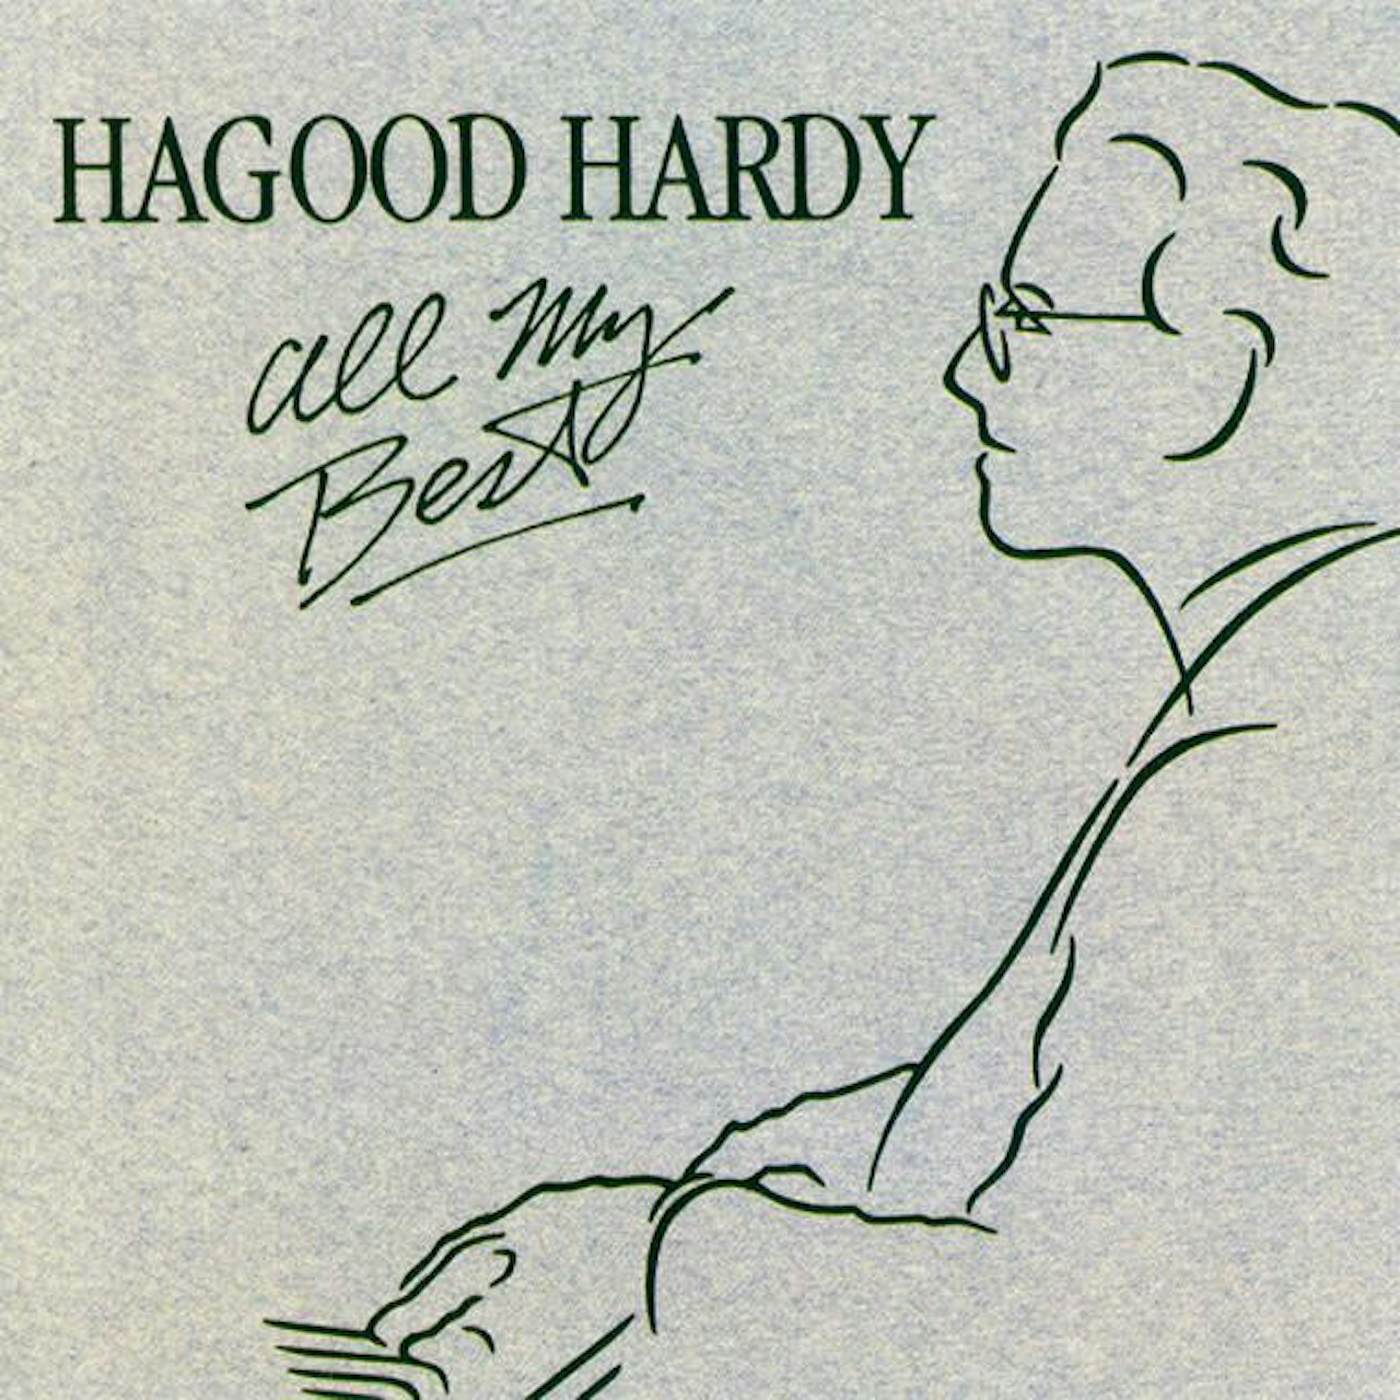 Hagood Hardy